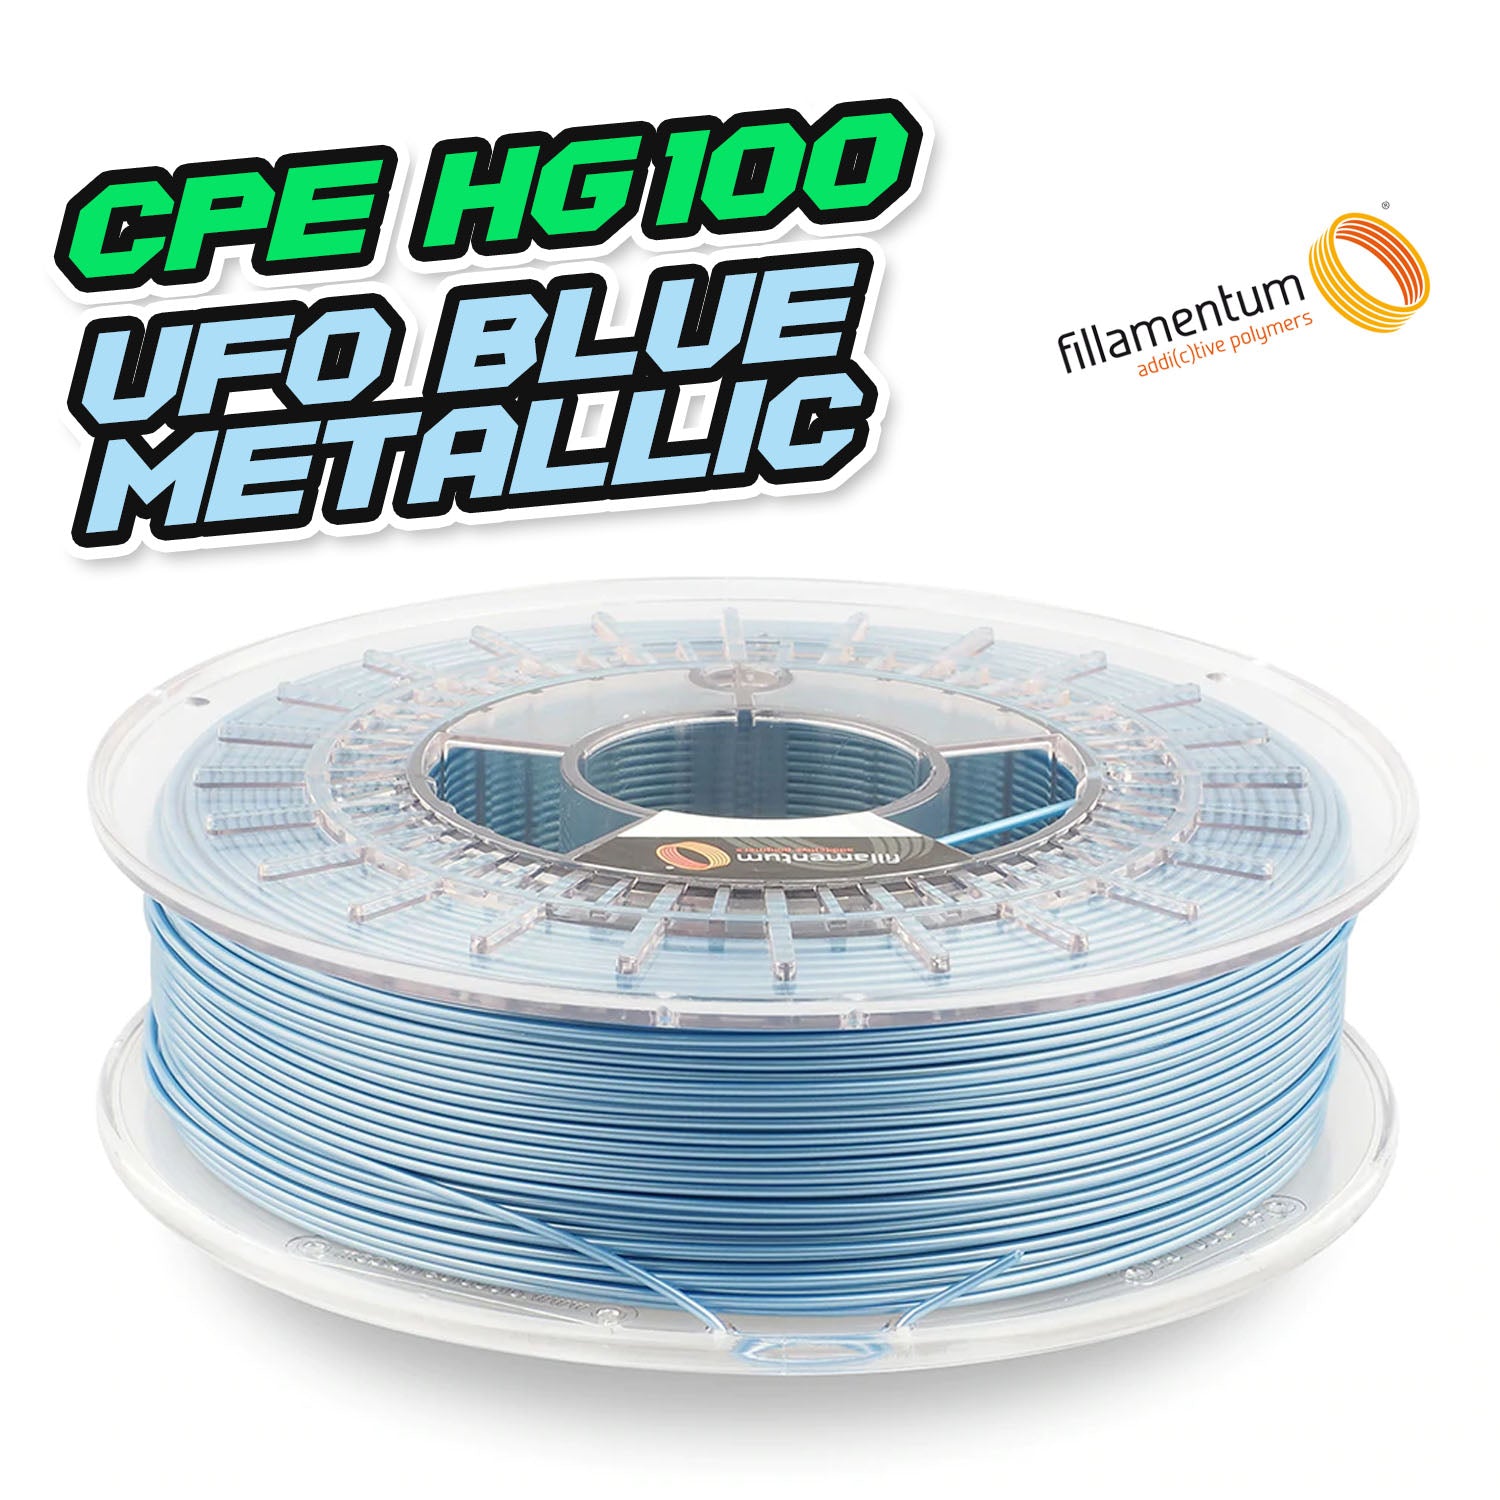 Fillamentum CPE HG100 - UFO Blue Metallic [1.75mm] (46,53€/Kg)